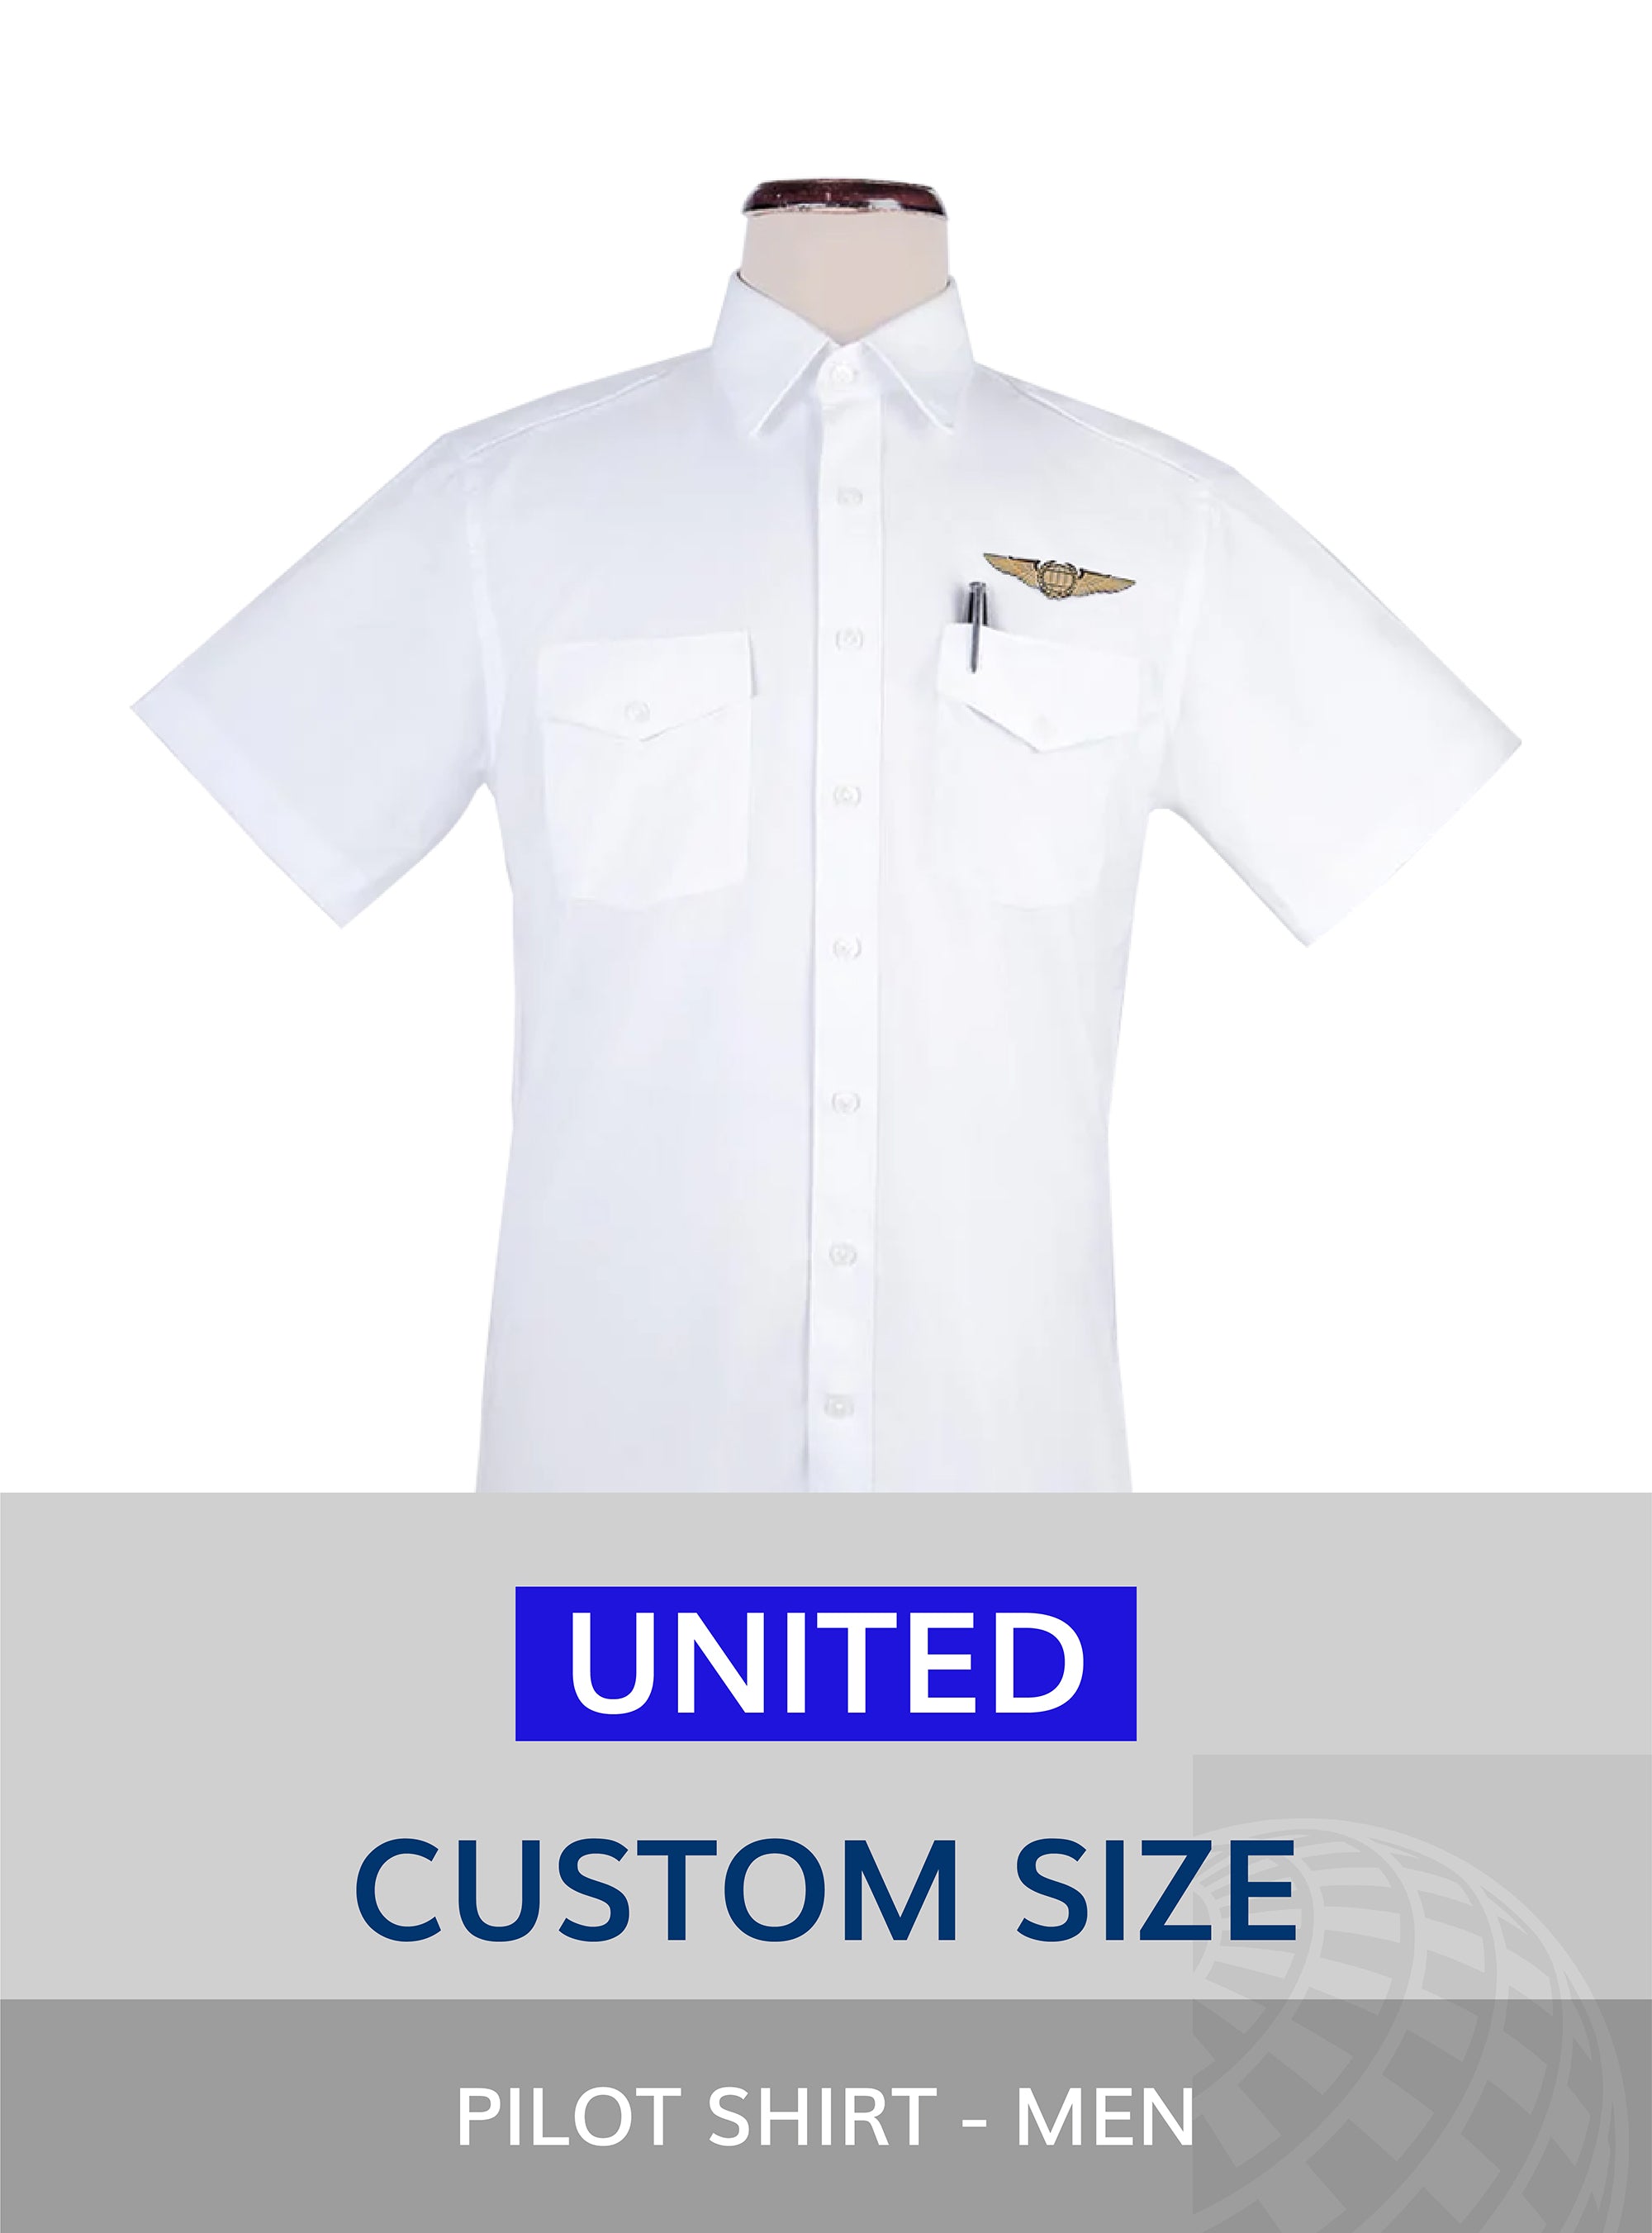 United Custom size pilot shit for men